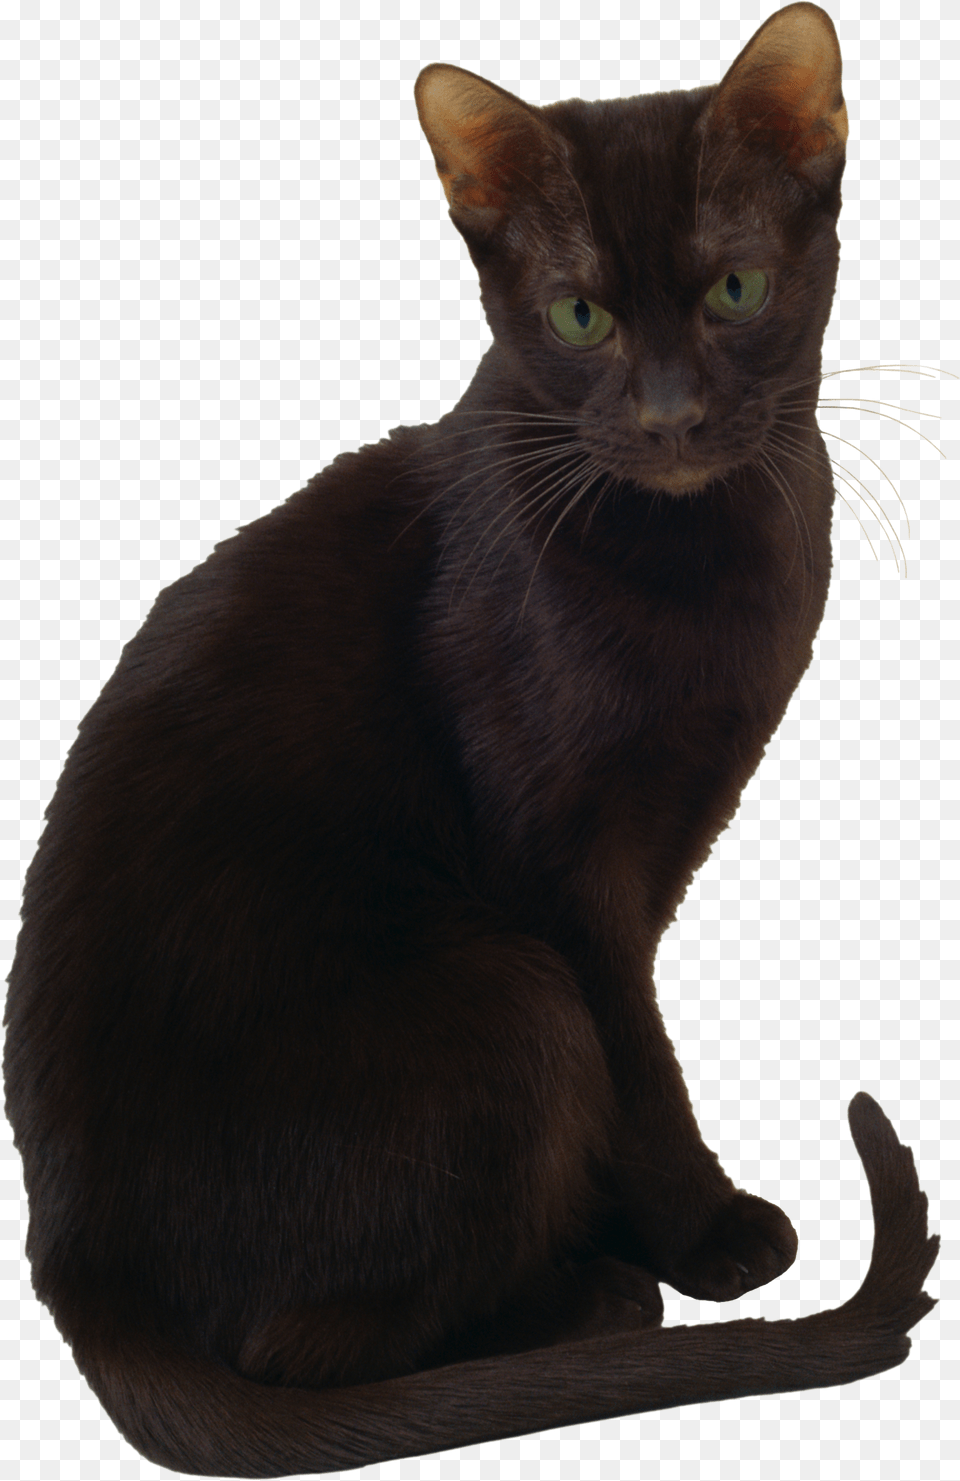 Cat, Animal, Mammal, Pet, Black Cat Png Image